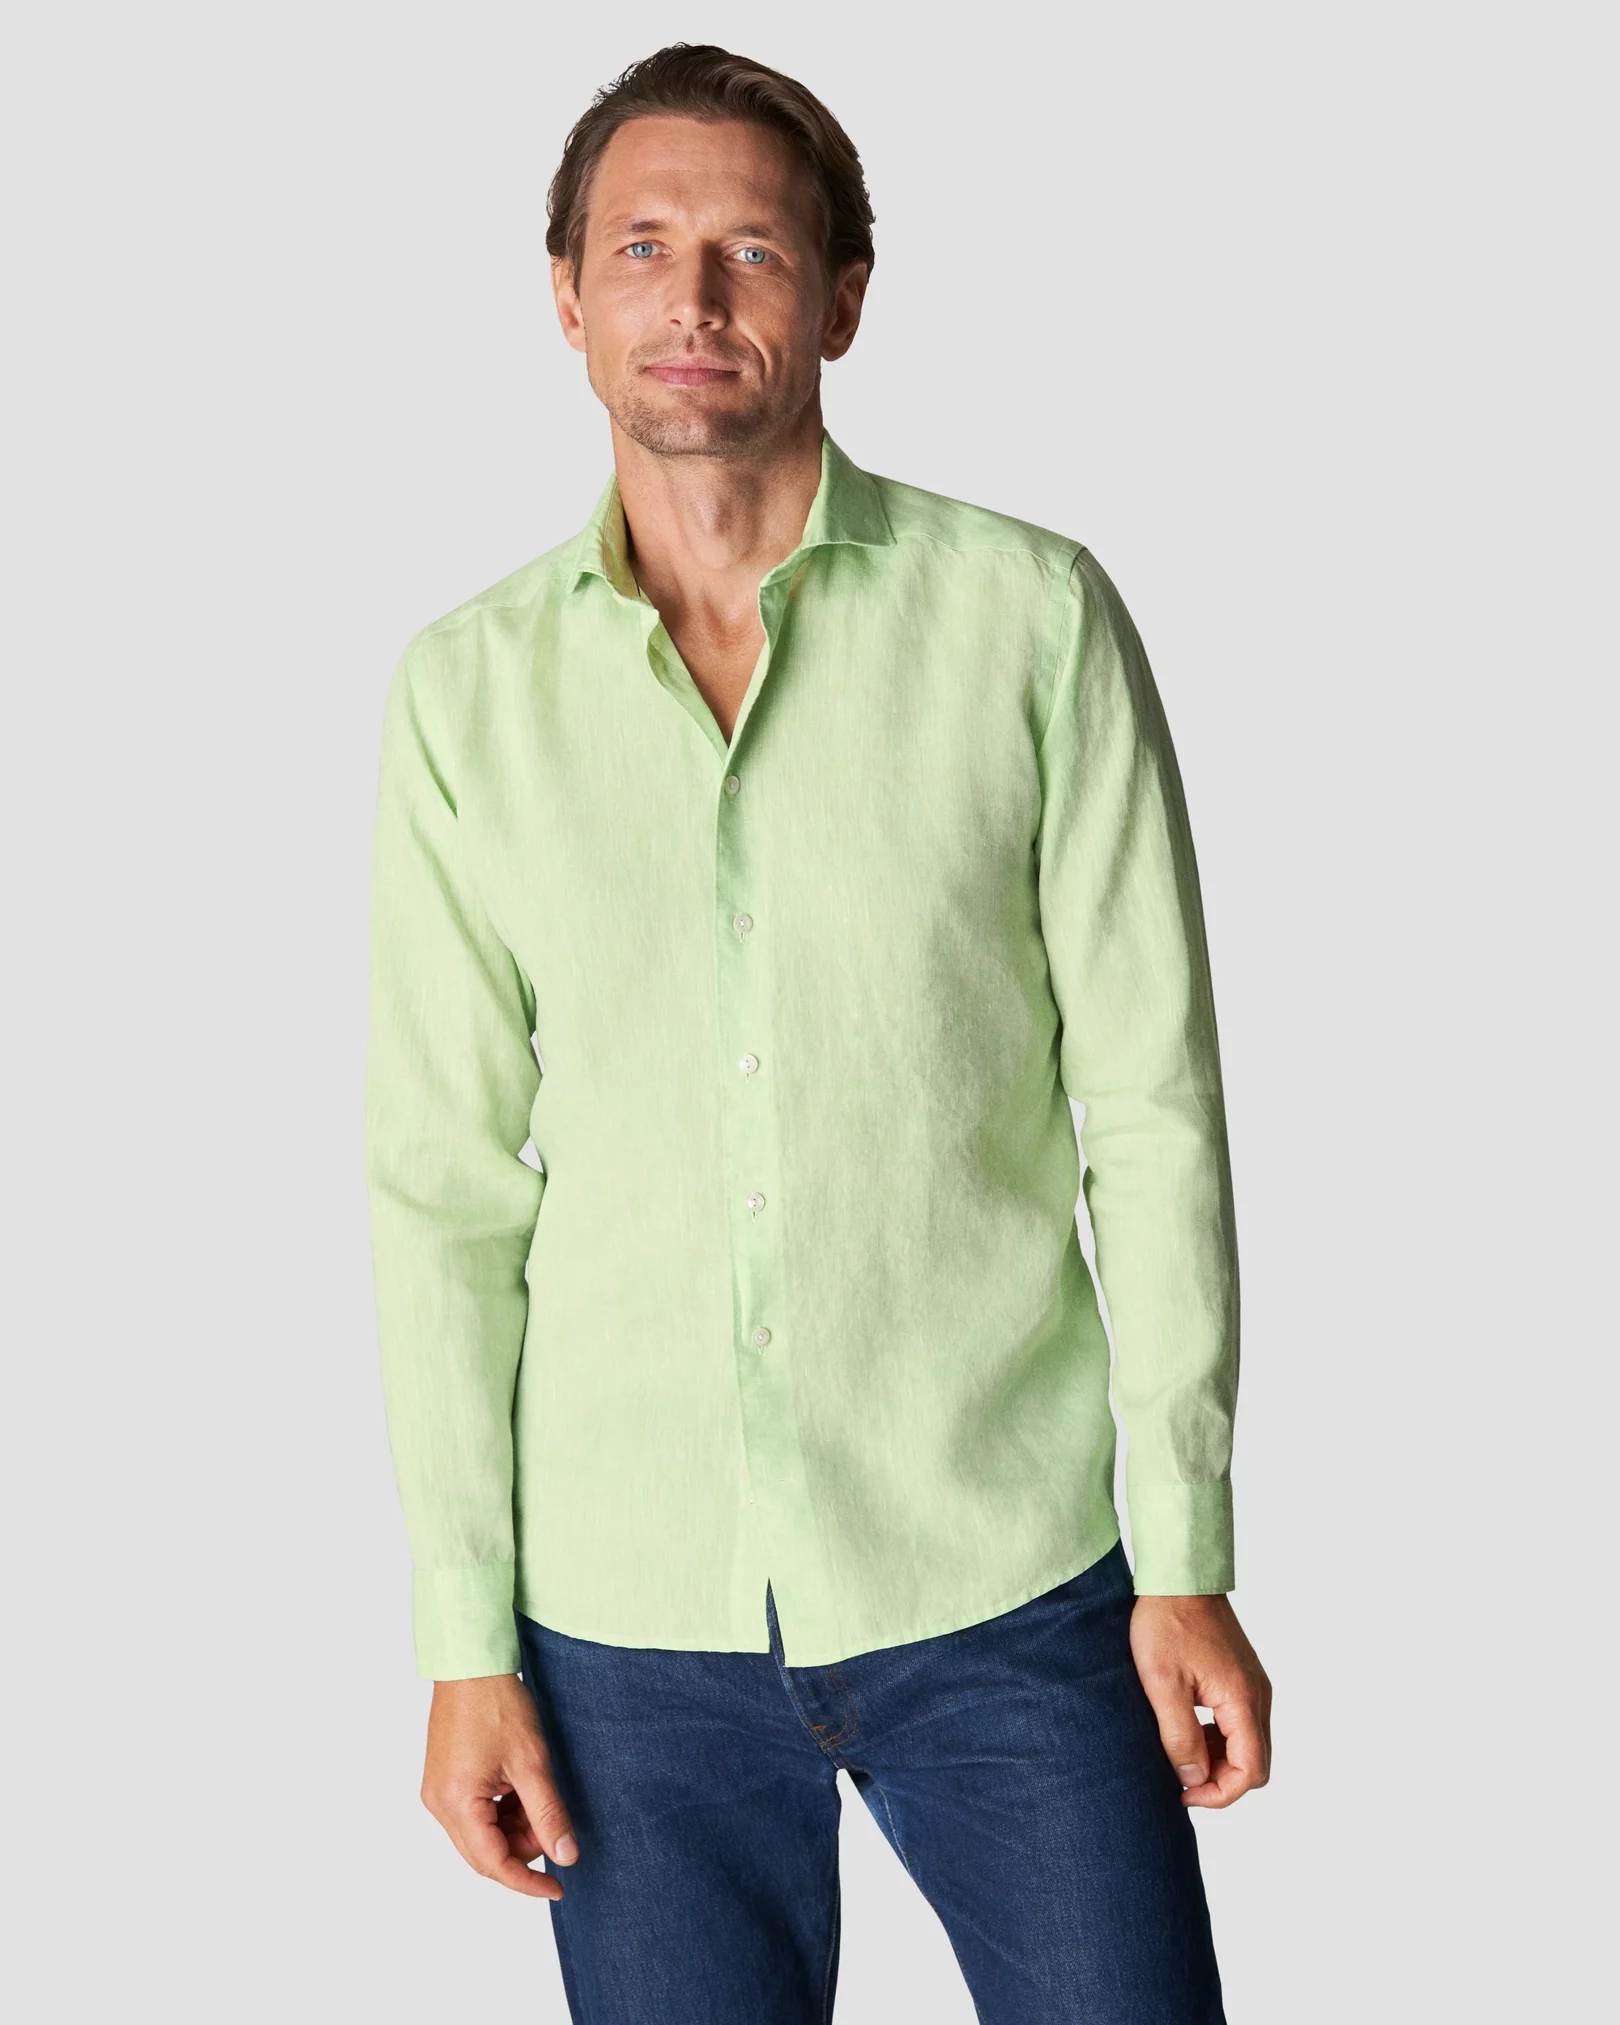 Eton - solid light green linen shirt